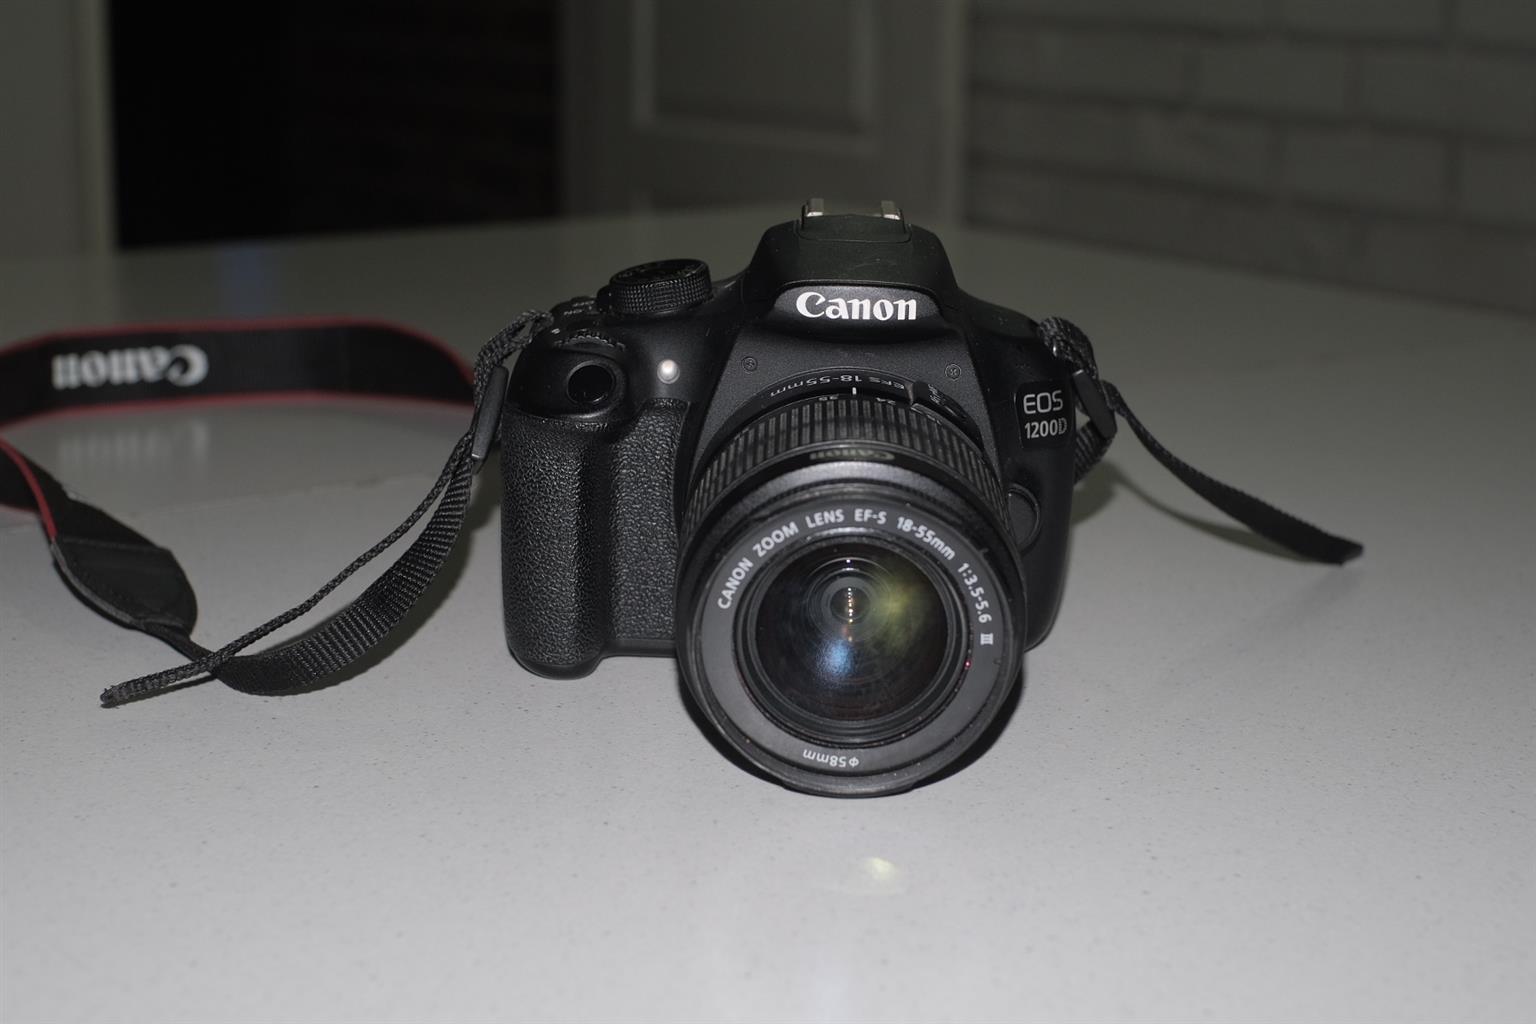 1200D Canon camera